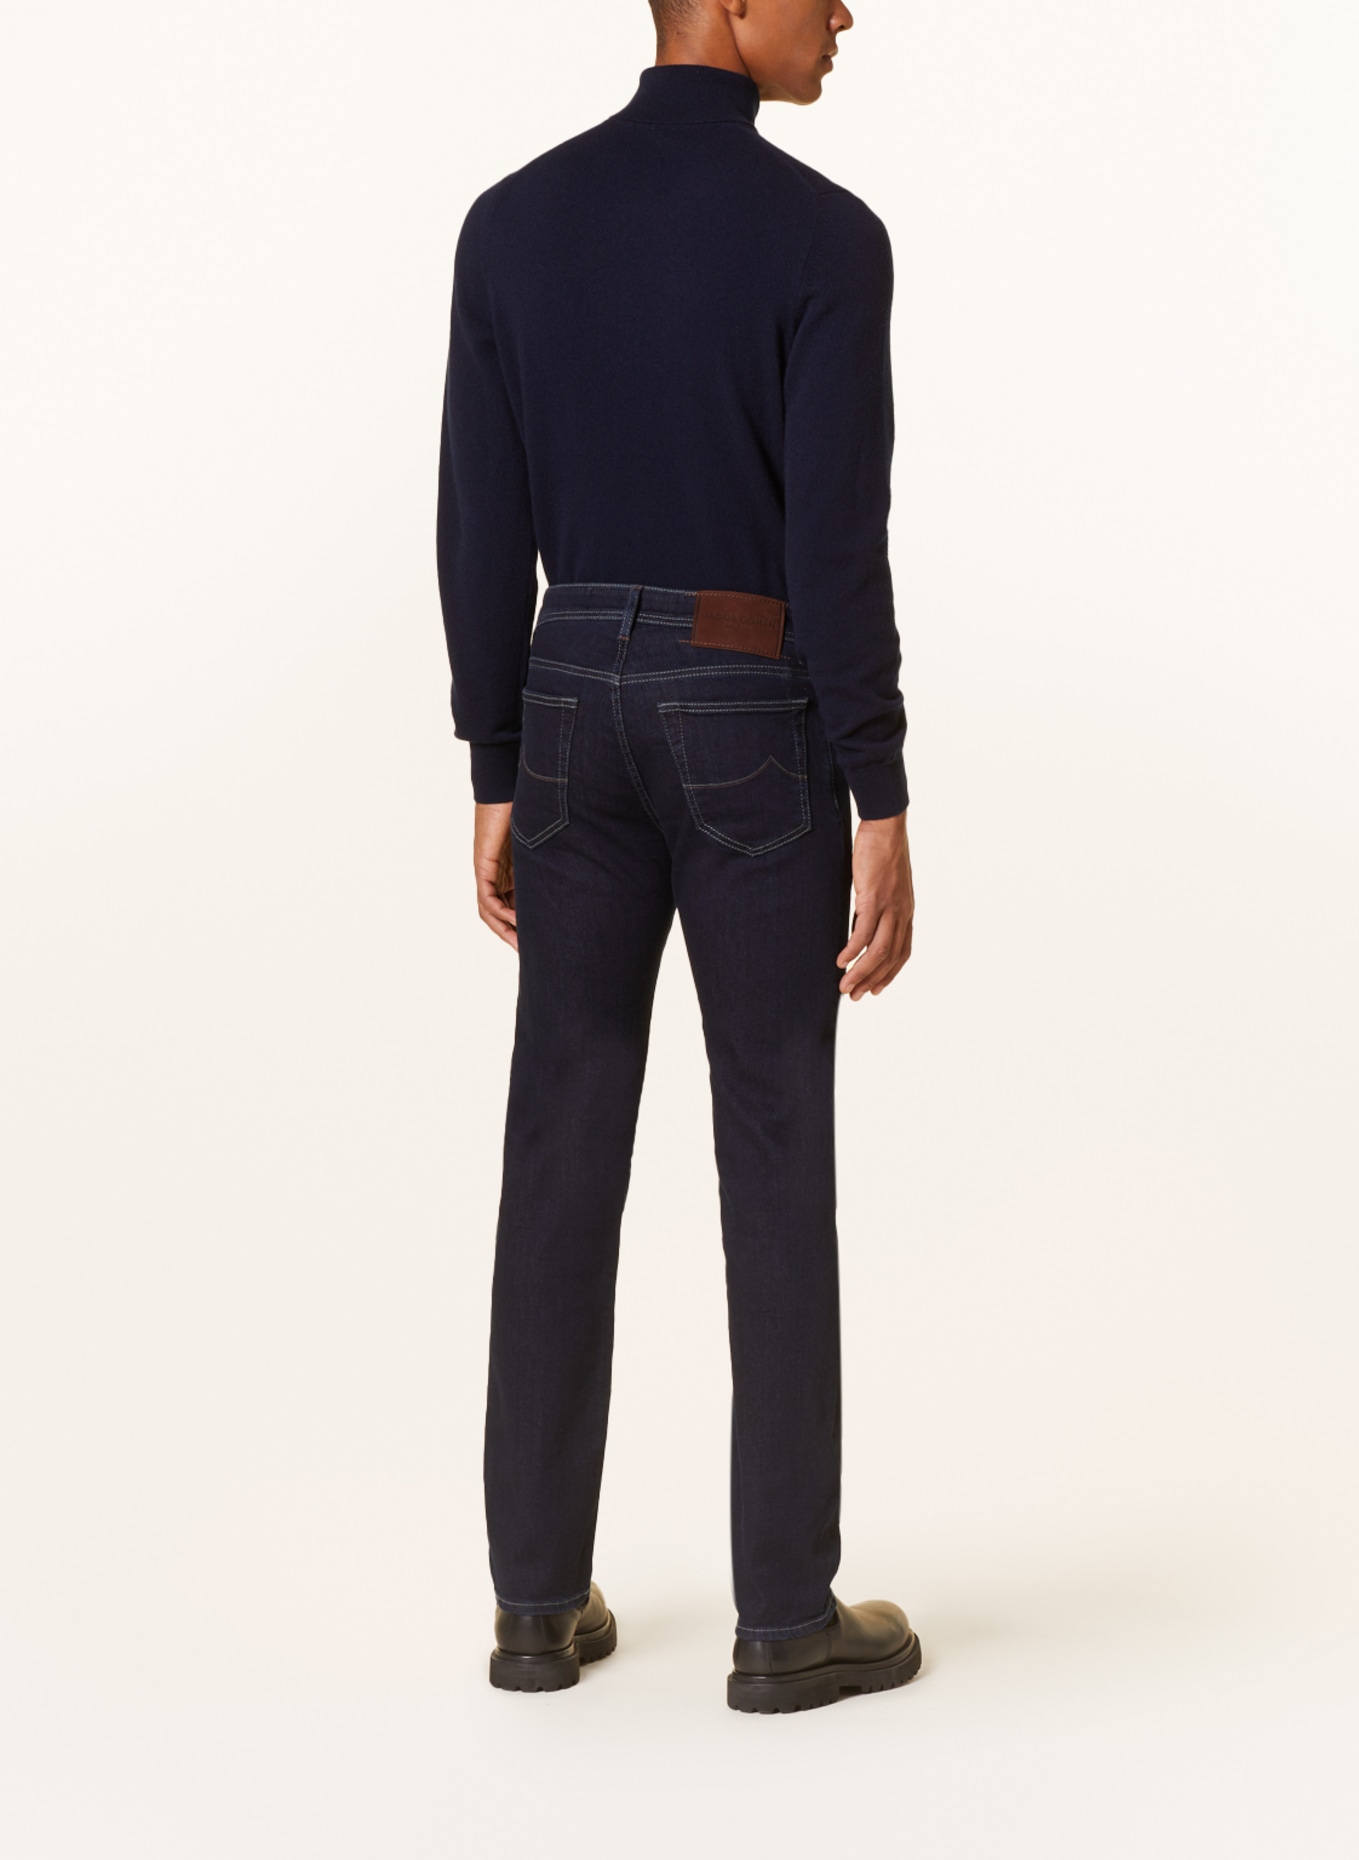 JACOB COHEN Jeans BARD slim fit, Color: 556D Dark Blue (Image 3)